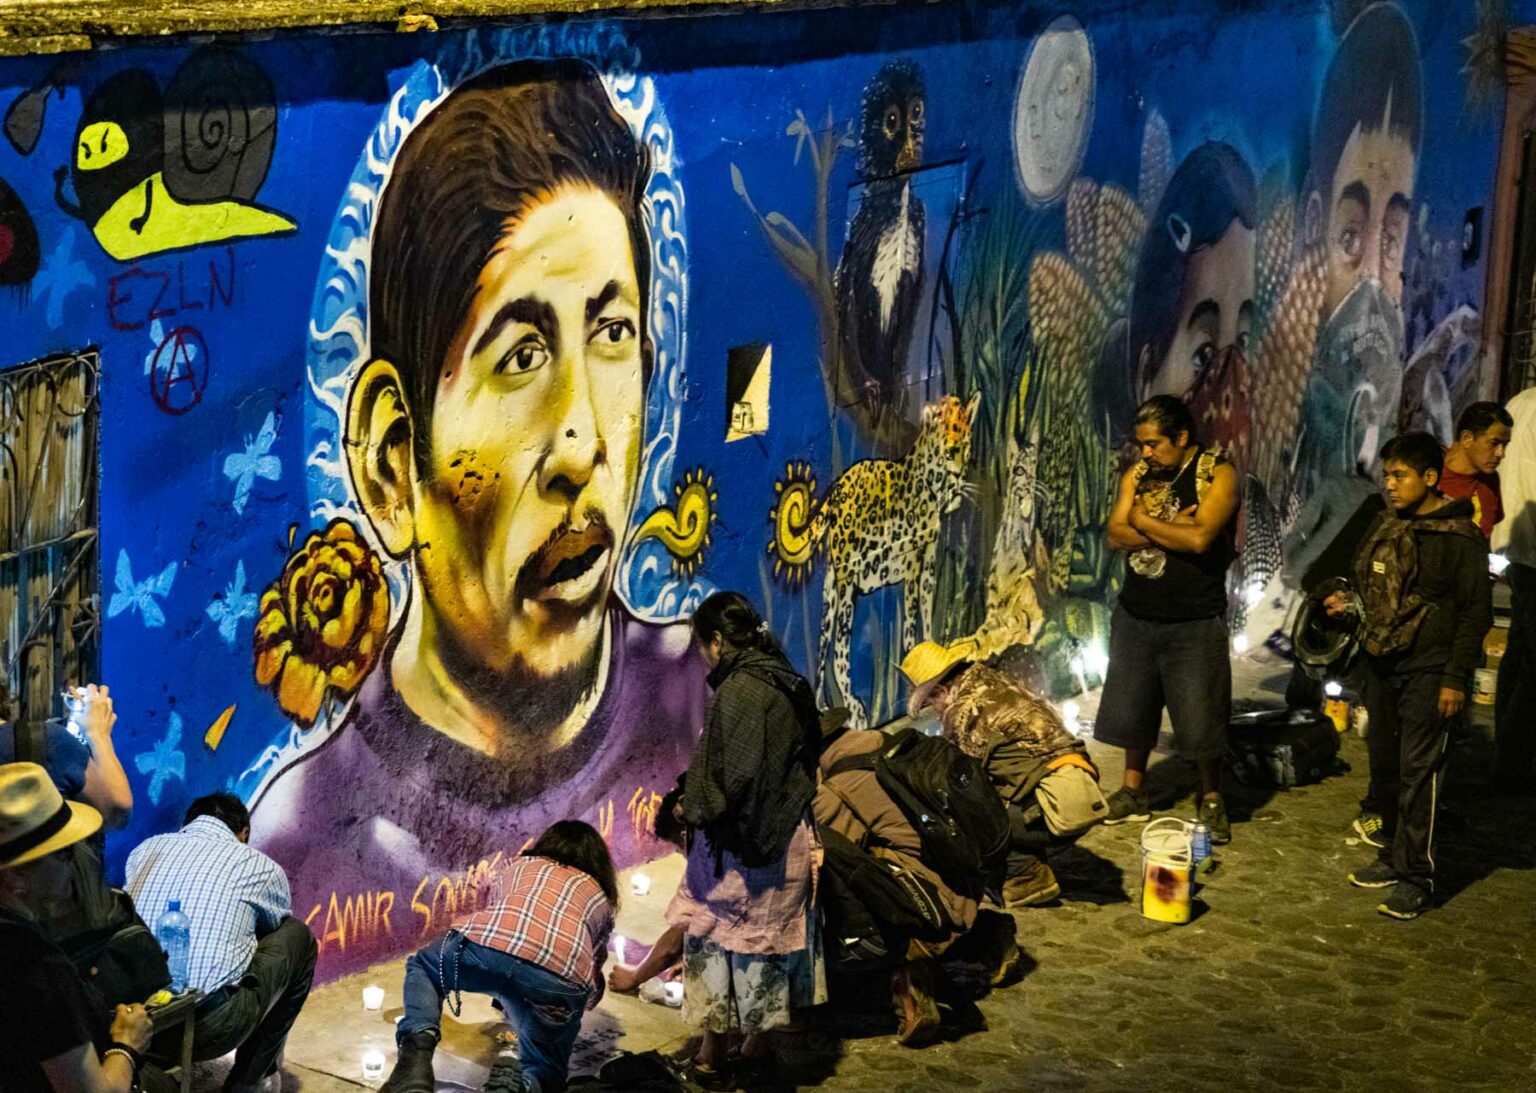 Gobierno de Oaxaca intentará boicotear Acción en memoria de Samir Flores